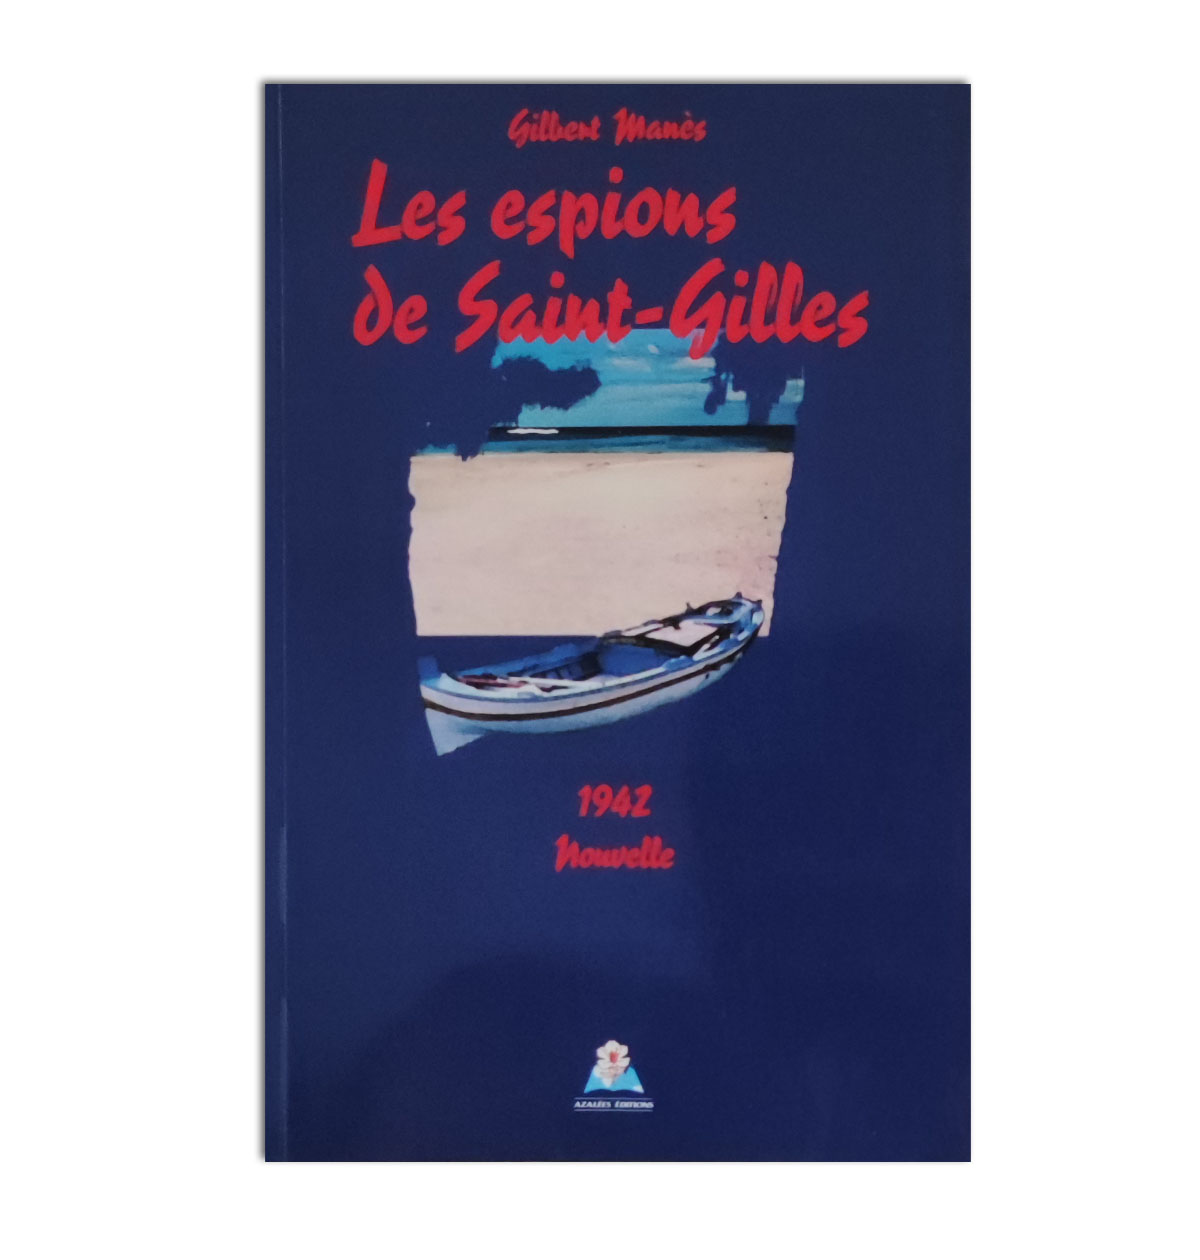 Les espions de Saint-Gilles 